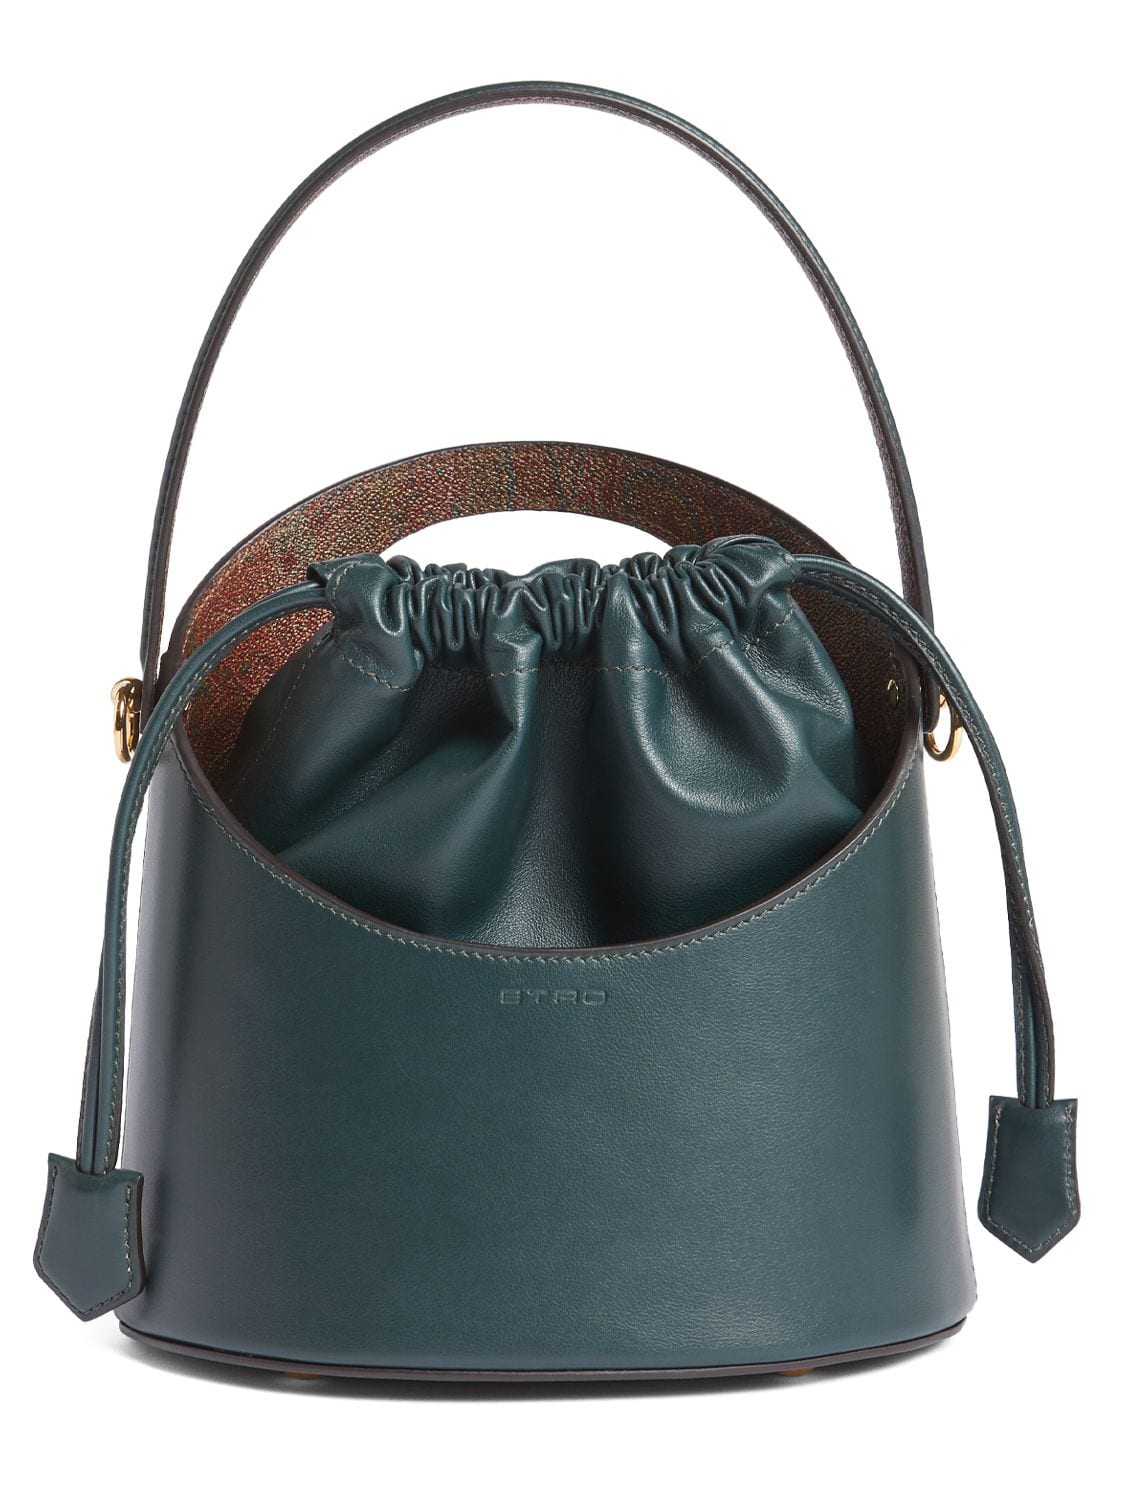 Etro Medium Saturno Leather Top Handle Bag In Verde Ottanio